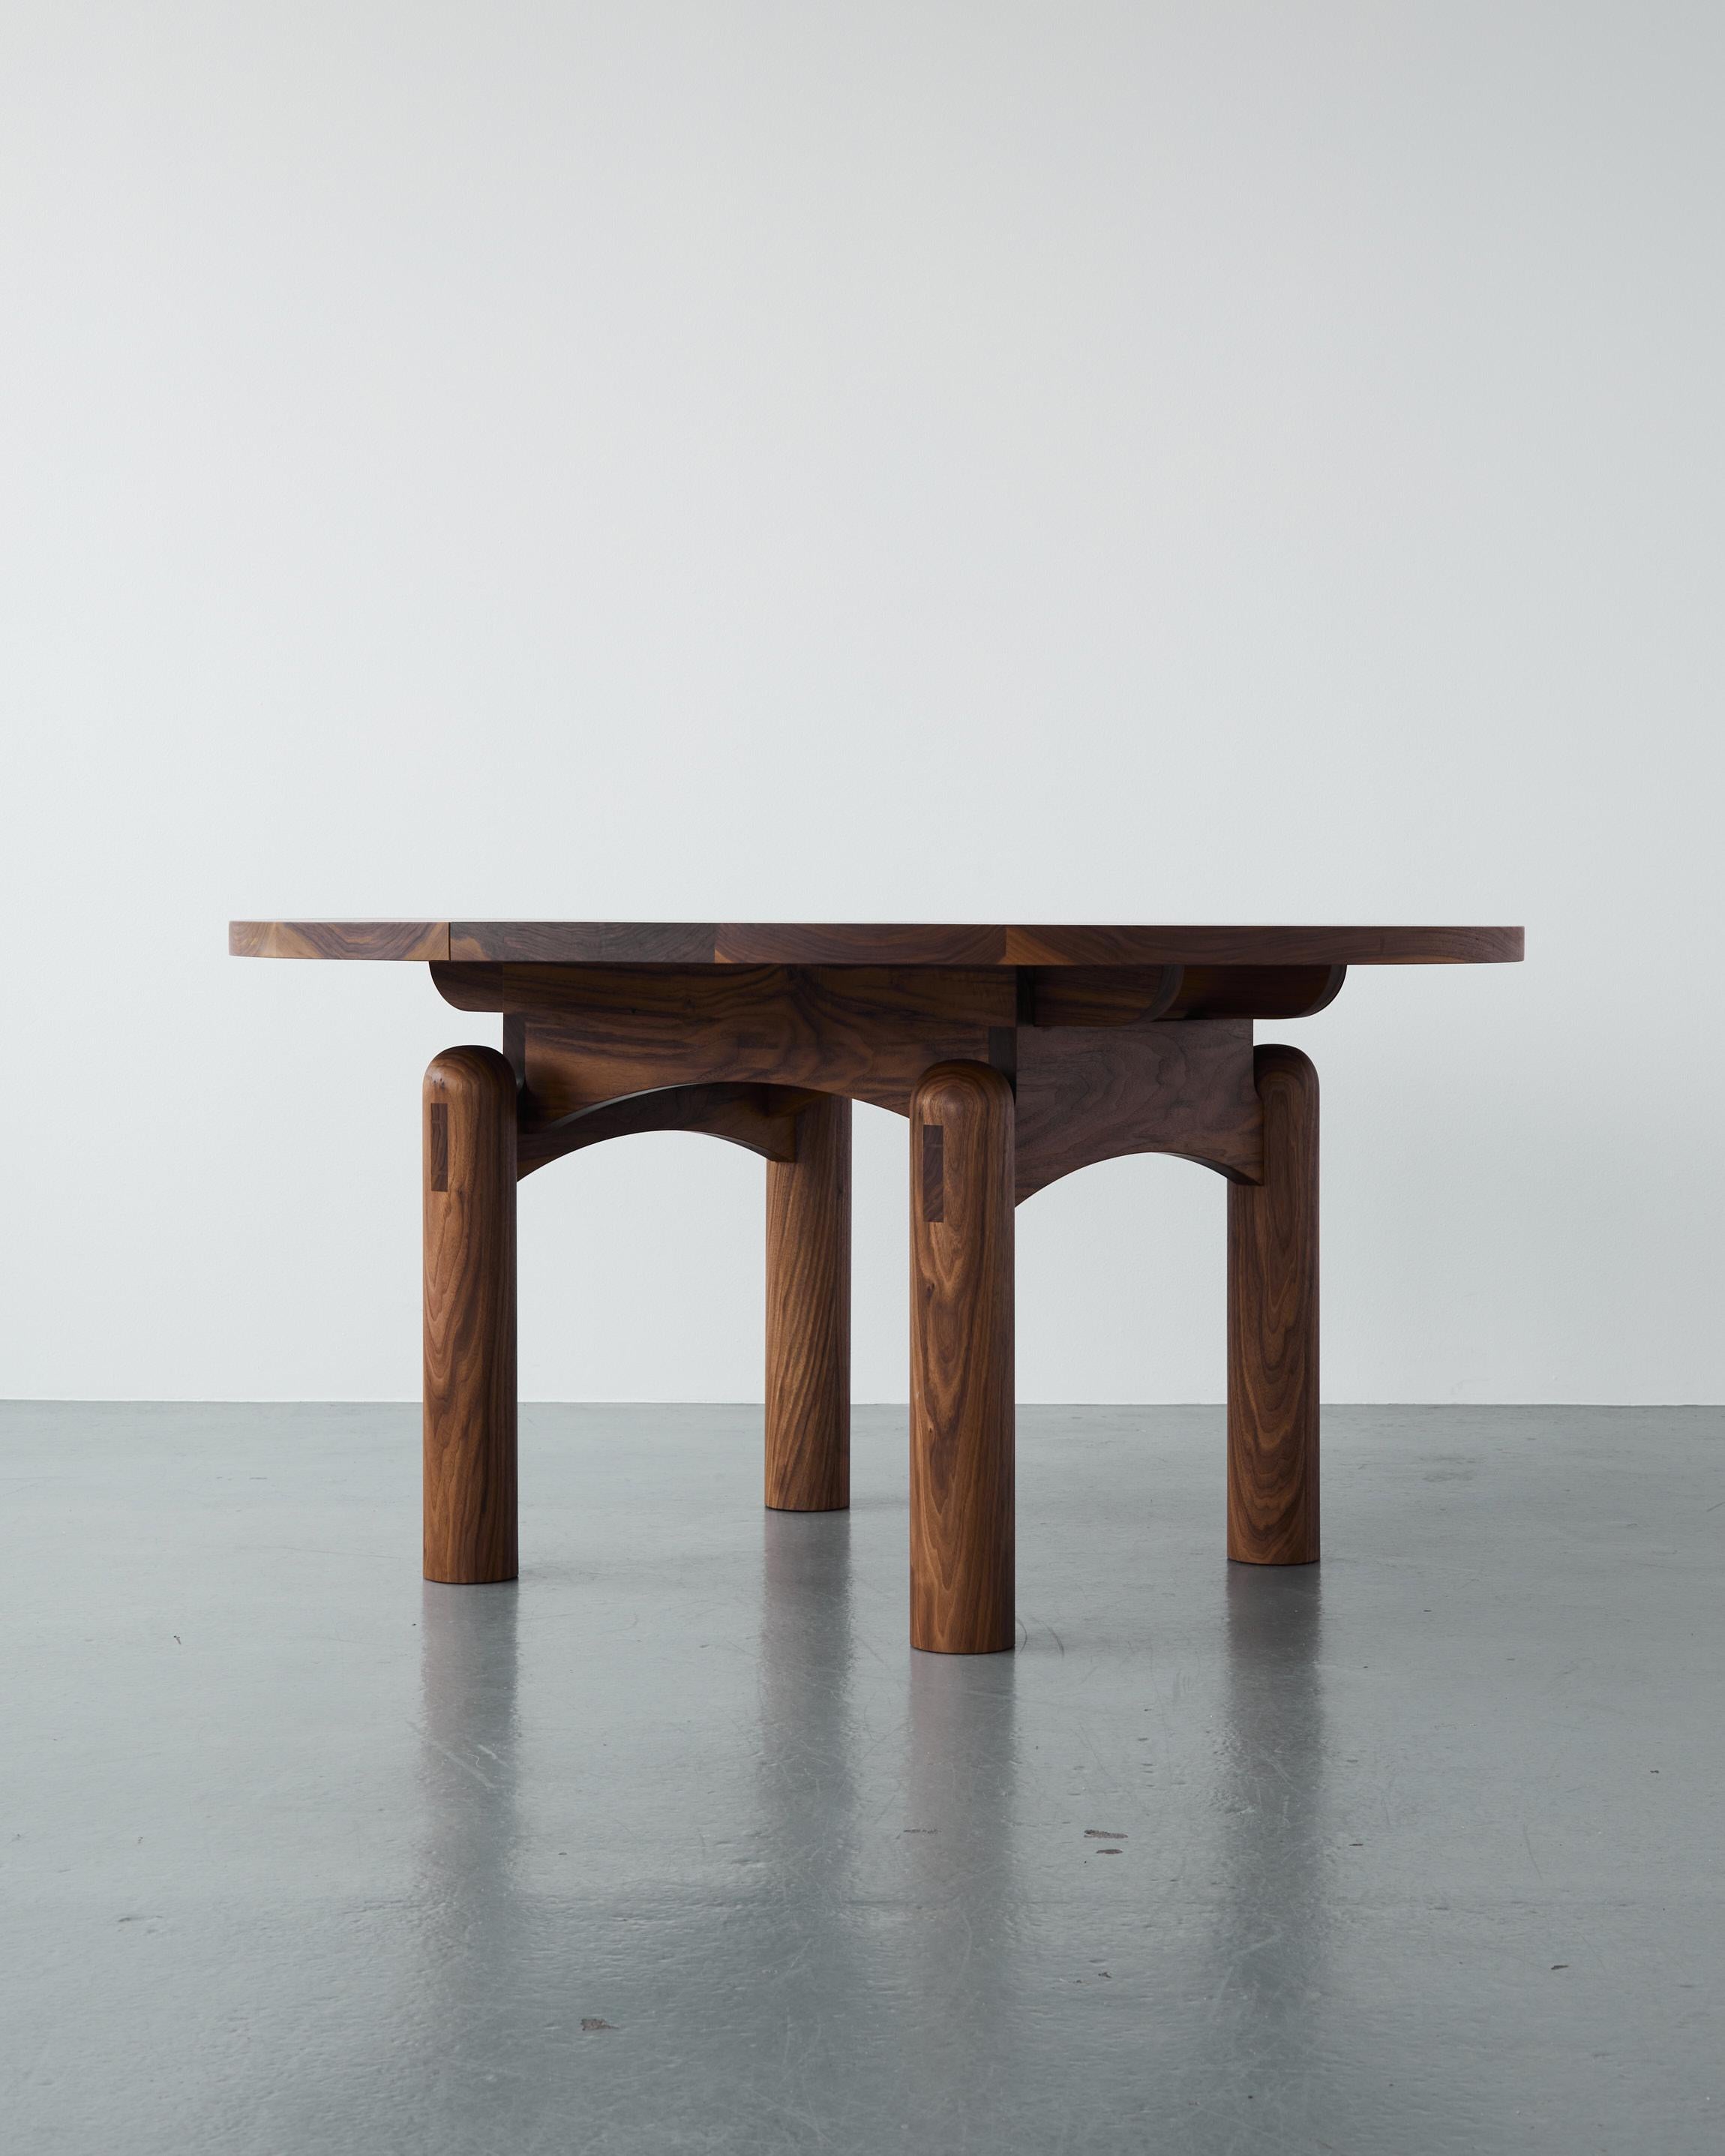 Der Nora Esstisch ist ein skulpturaler, runder Tisch, dessen Volumen und Präsenz jedes Esszimmer erdet. Die massiven Beine sind mit einer Kuppel versehen, die aus jedem Blickwinkel eine gewölbte Silhouette ergibt und einen taktilen Blickpunkt